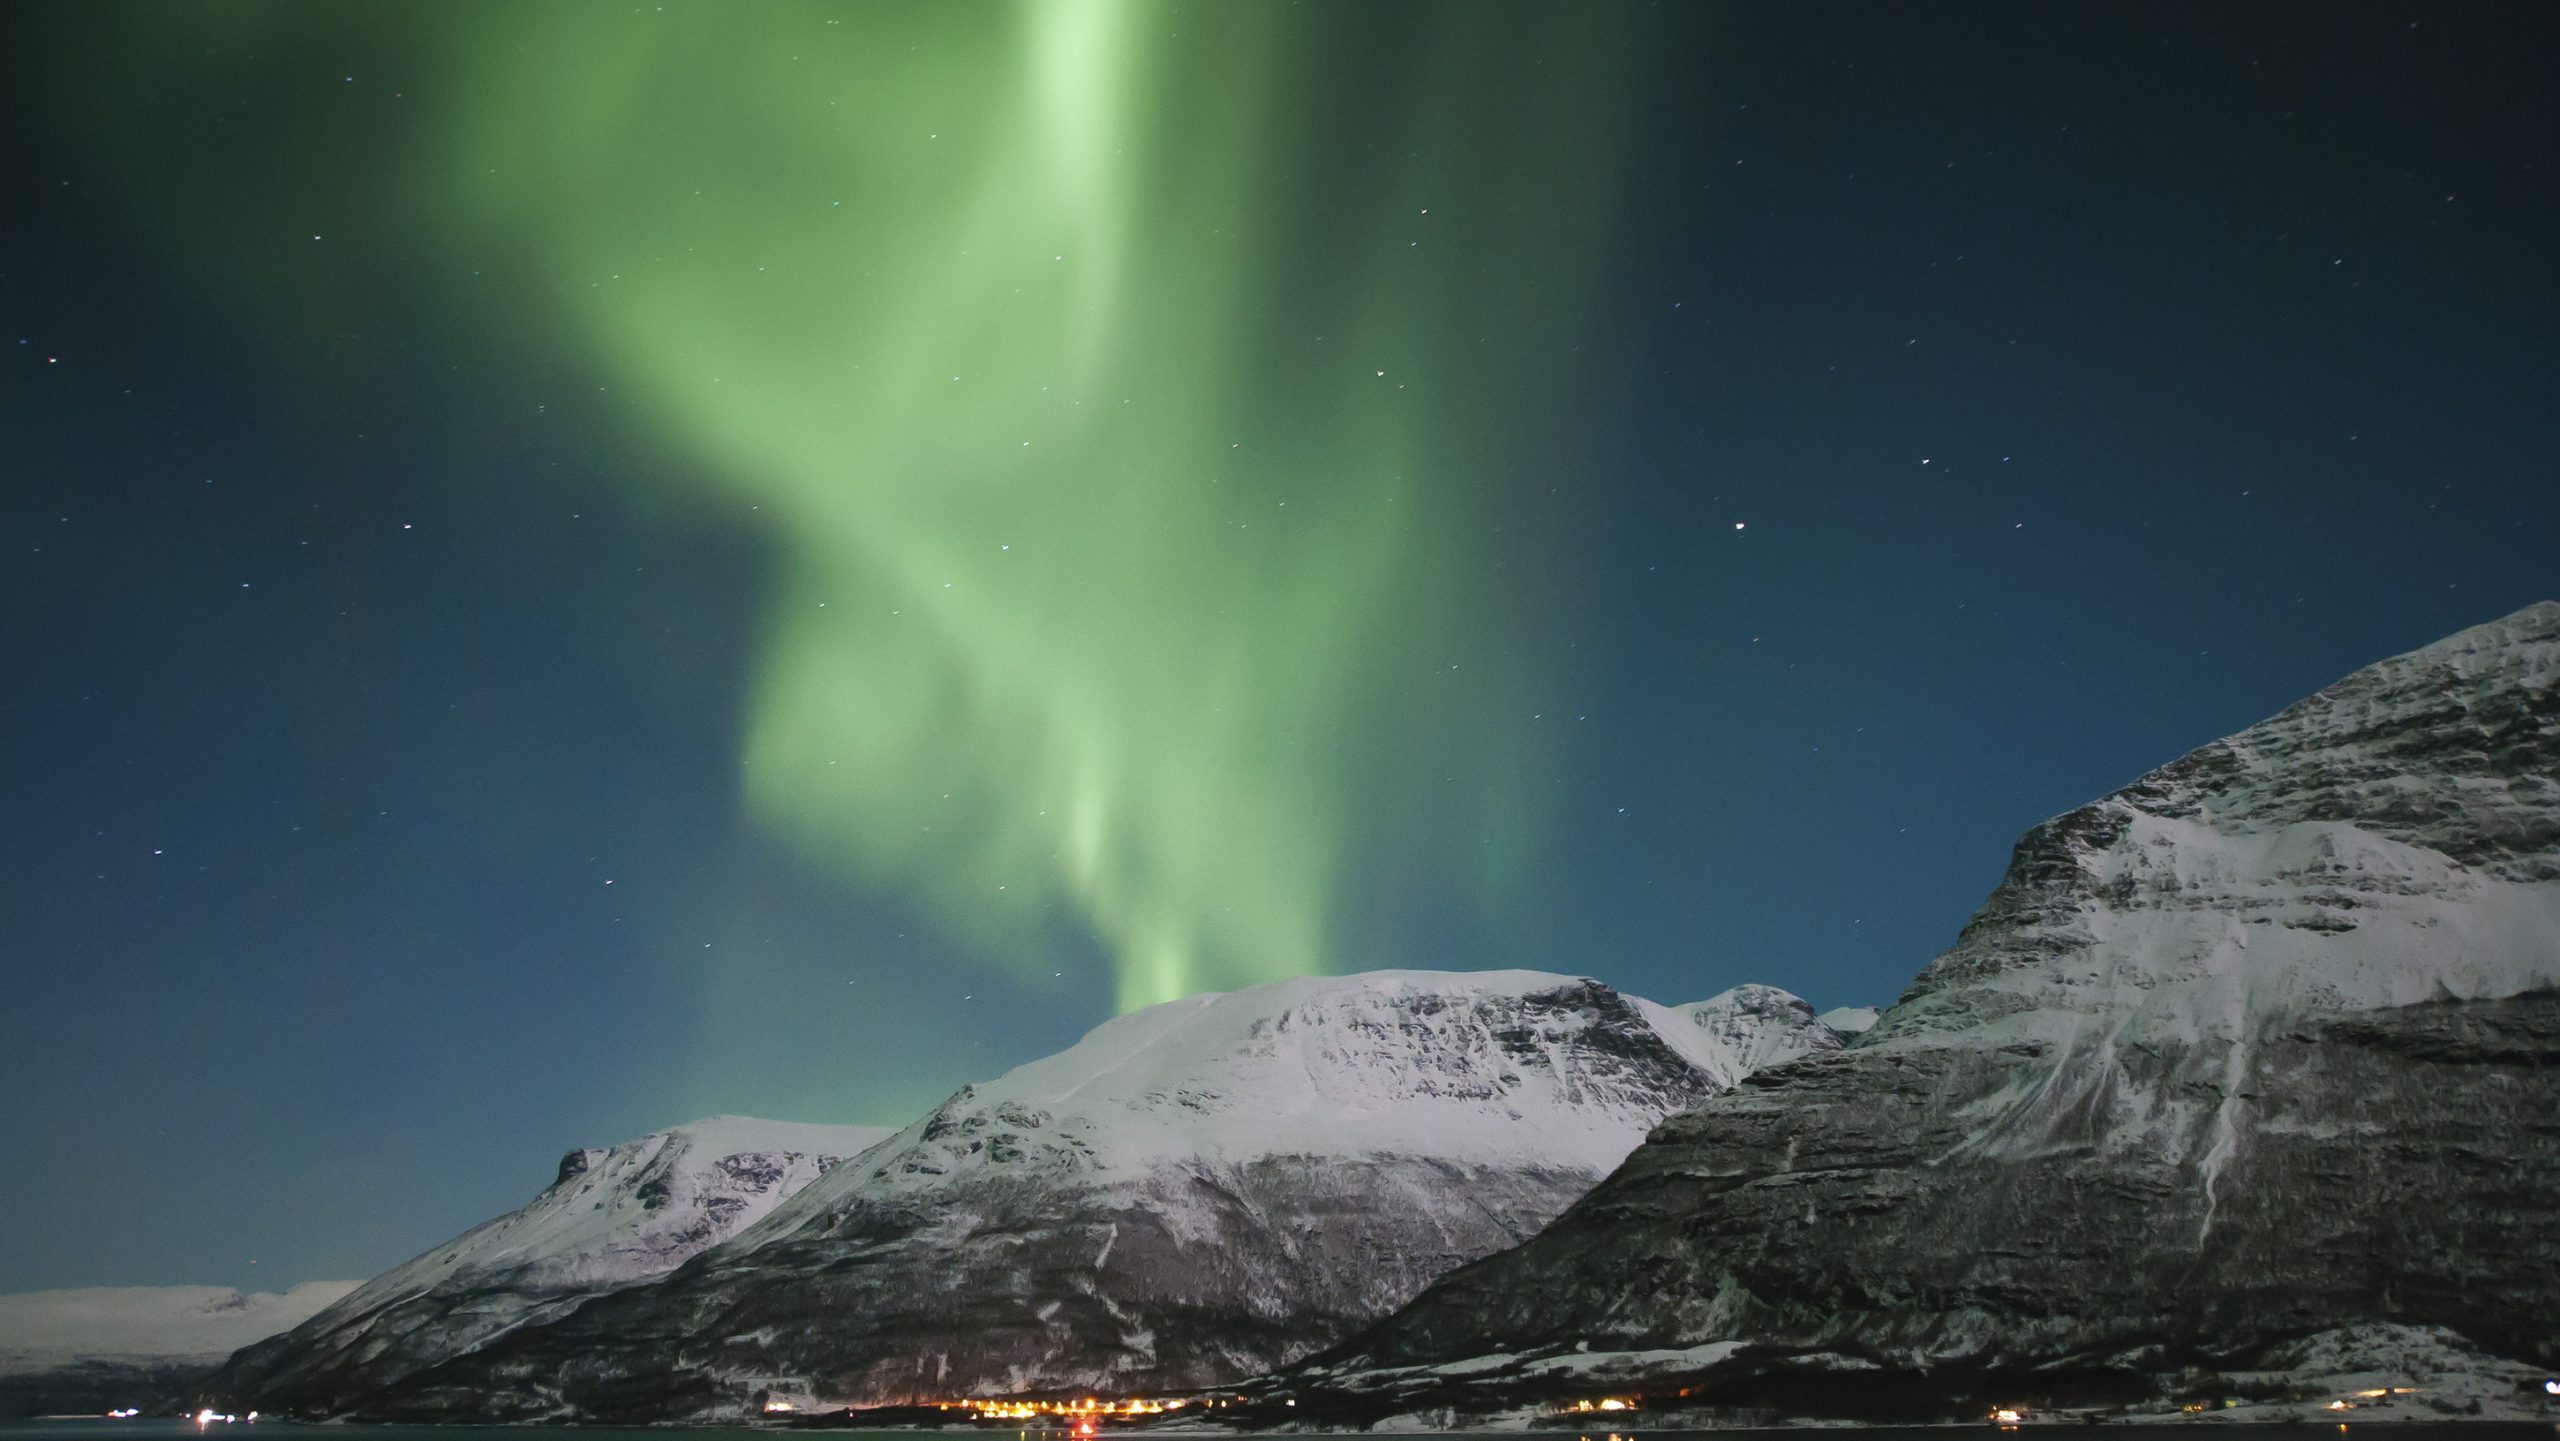 northern lights in norway - fotos de auroras boreales en Noruega